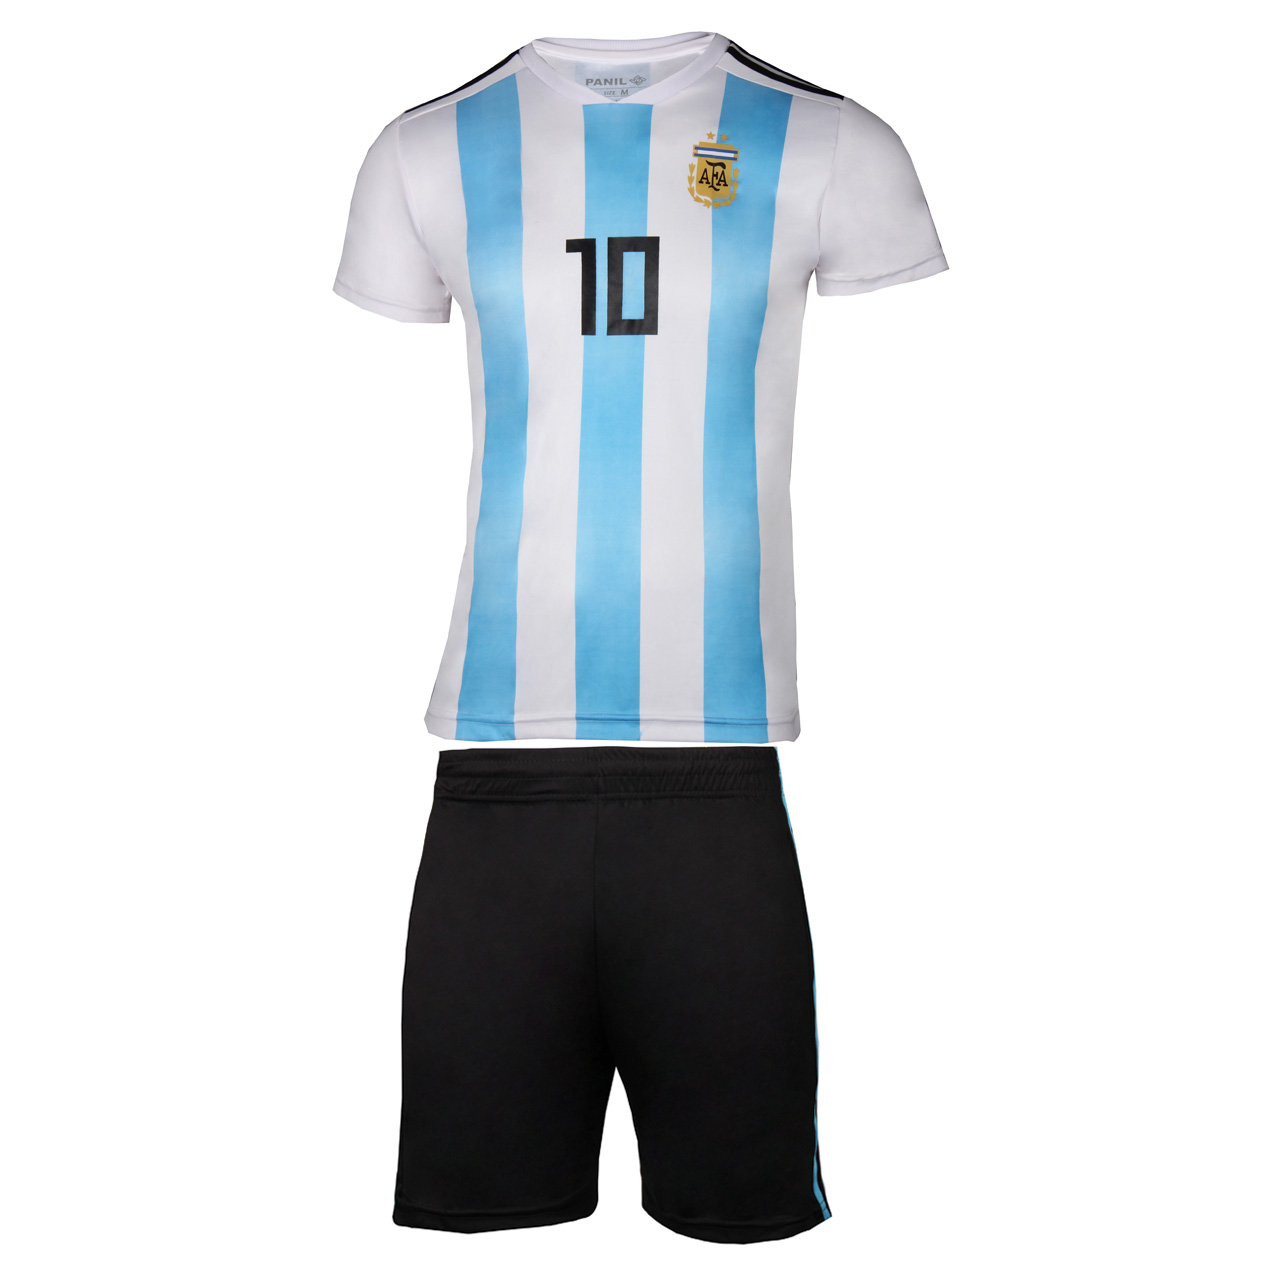 پیراهن و شورت ورزشی پانیل طرح تیم آرژانتین کد 3047